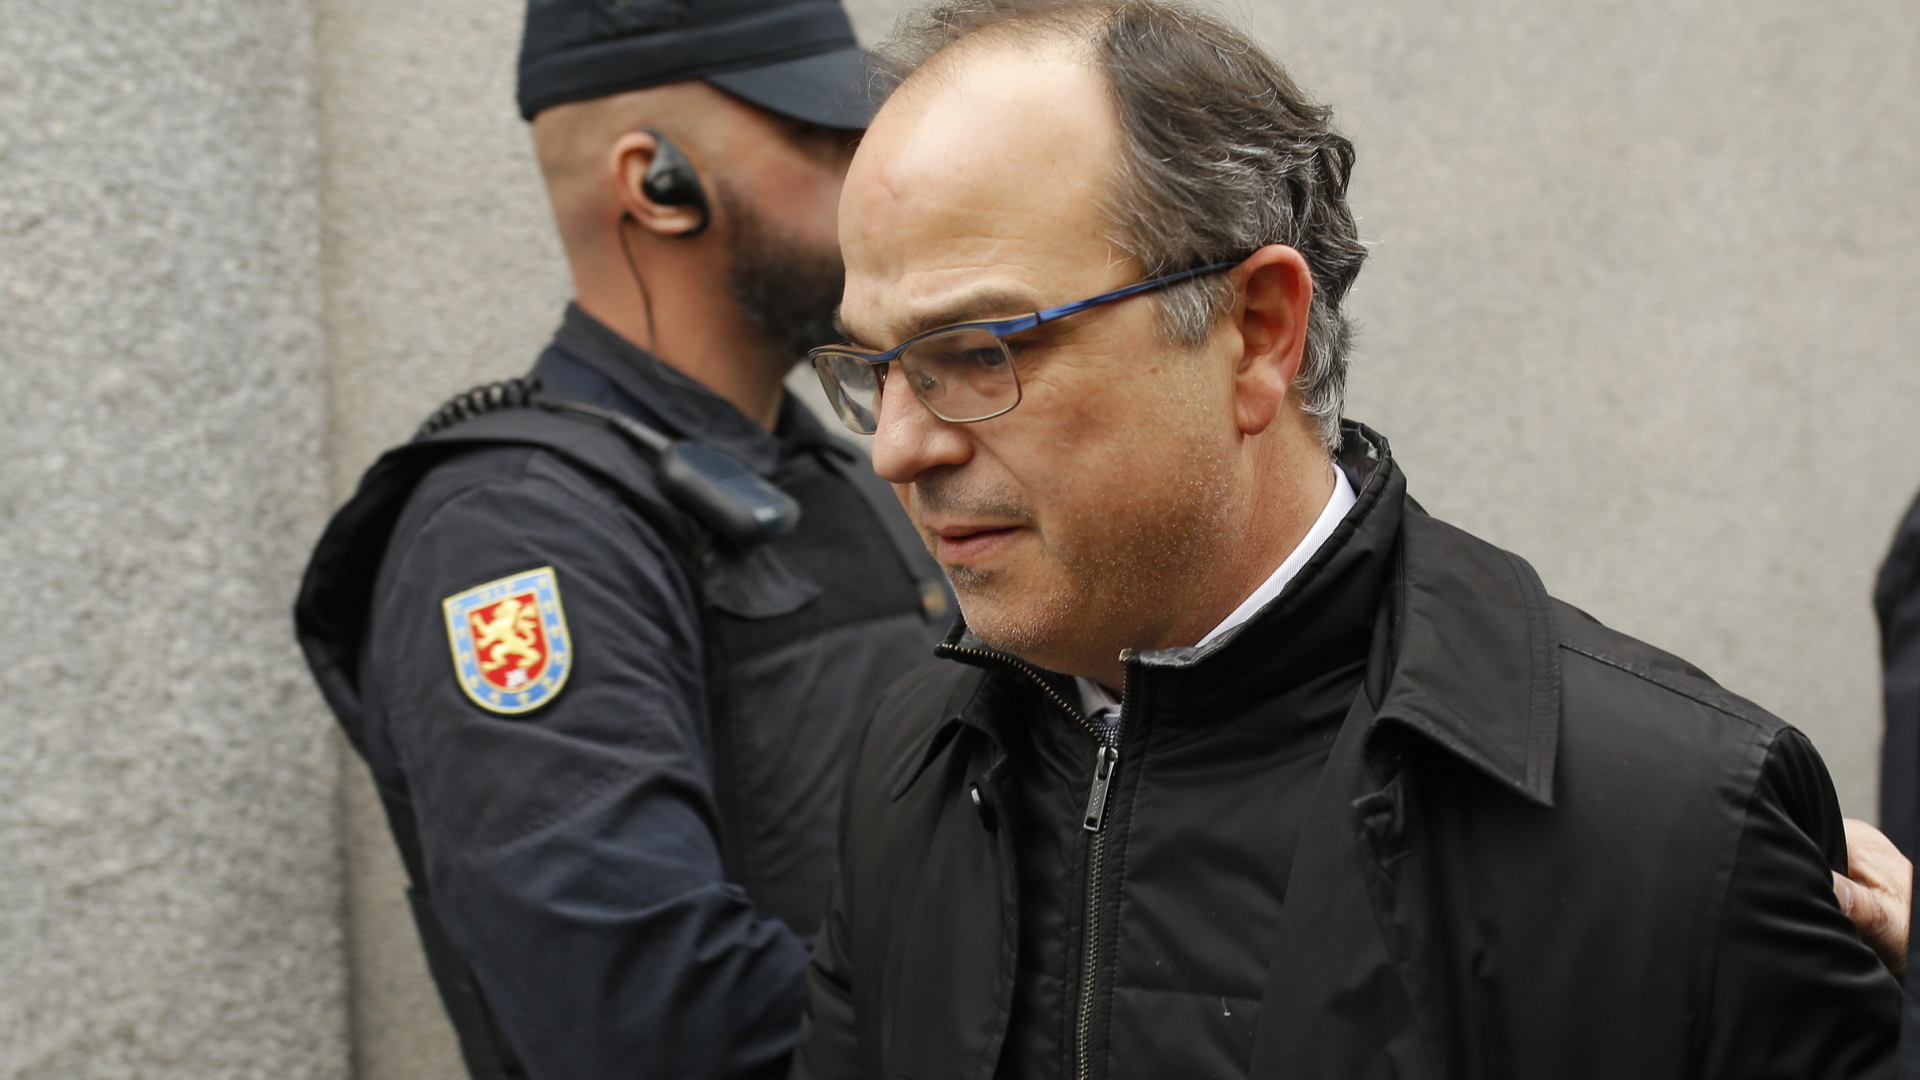 Jordi Turull, katalanischer Präsidentschaftskandidat, auf dem Weg zum Obersten Gericht in Madrid. | dpa